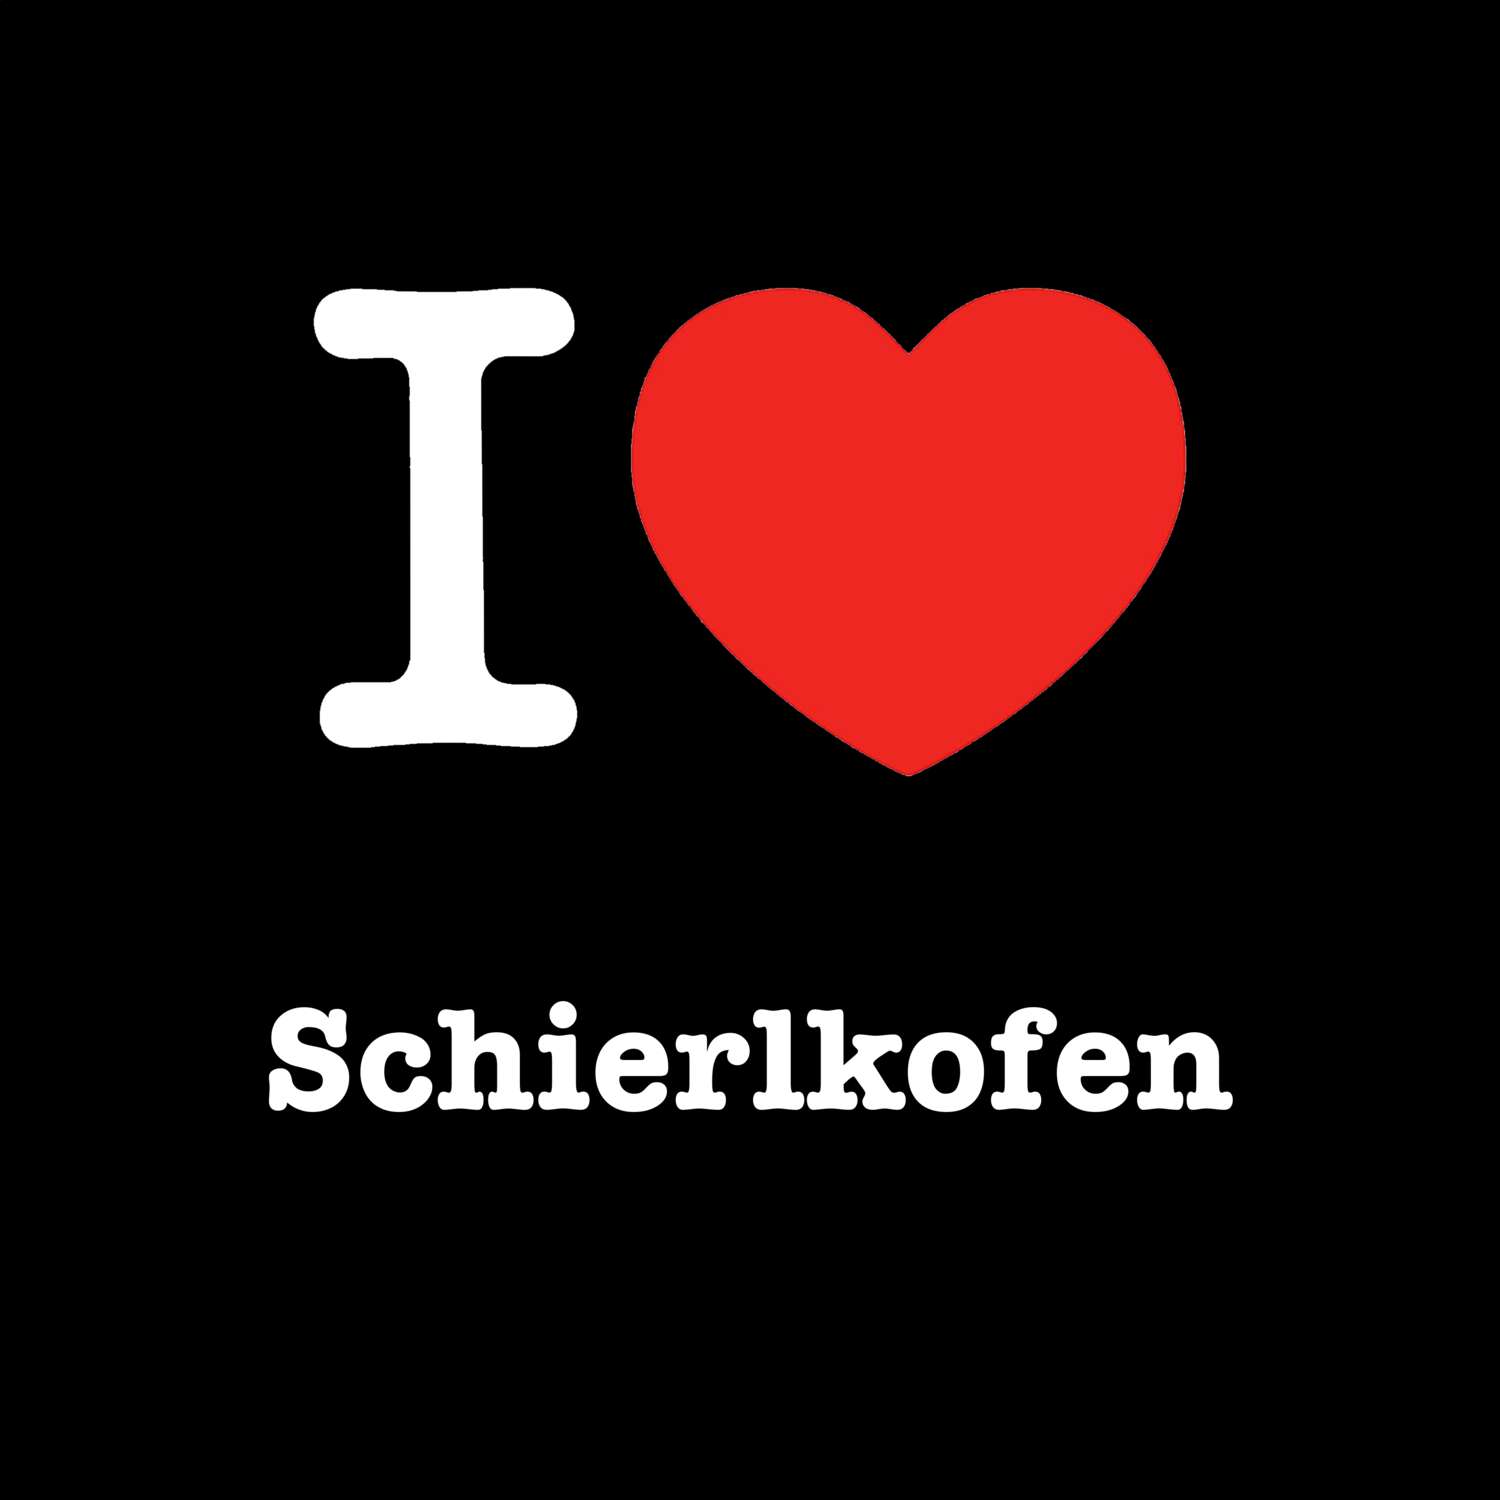 Schierlkofen T-Shirt »I love«